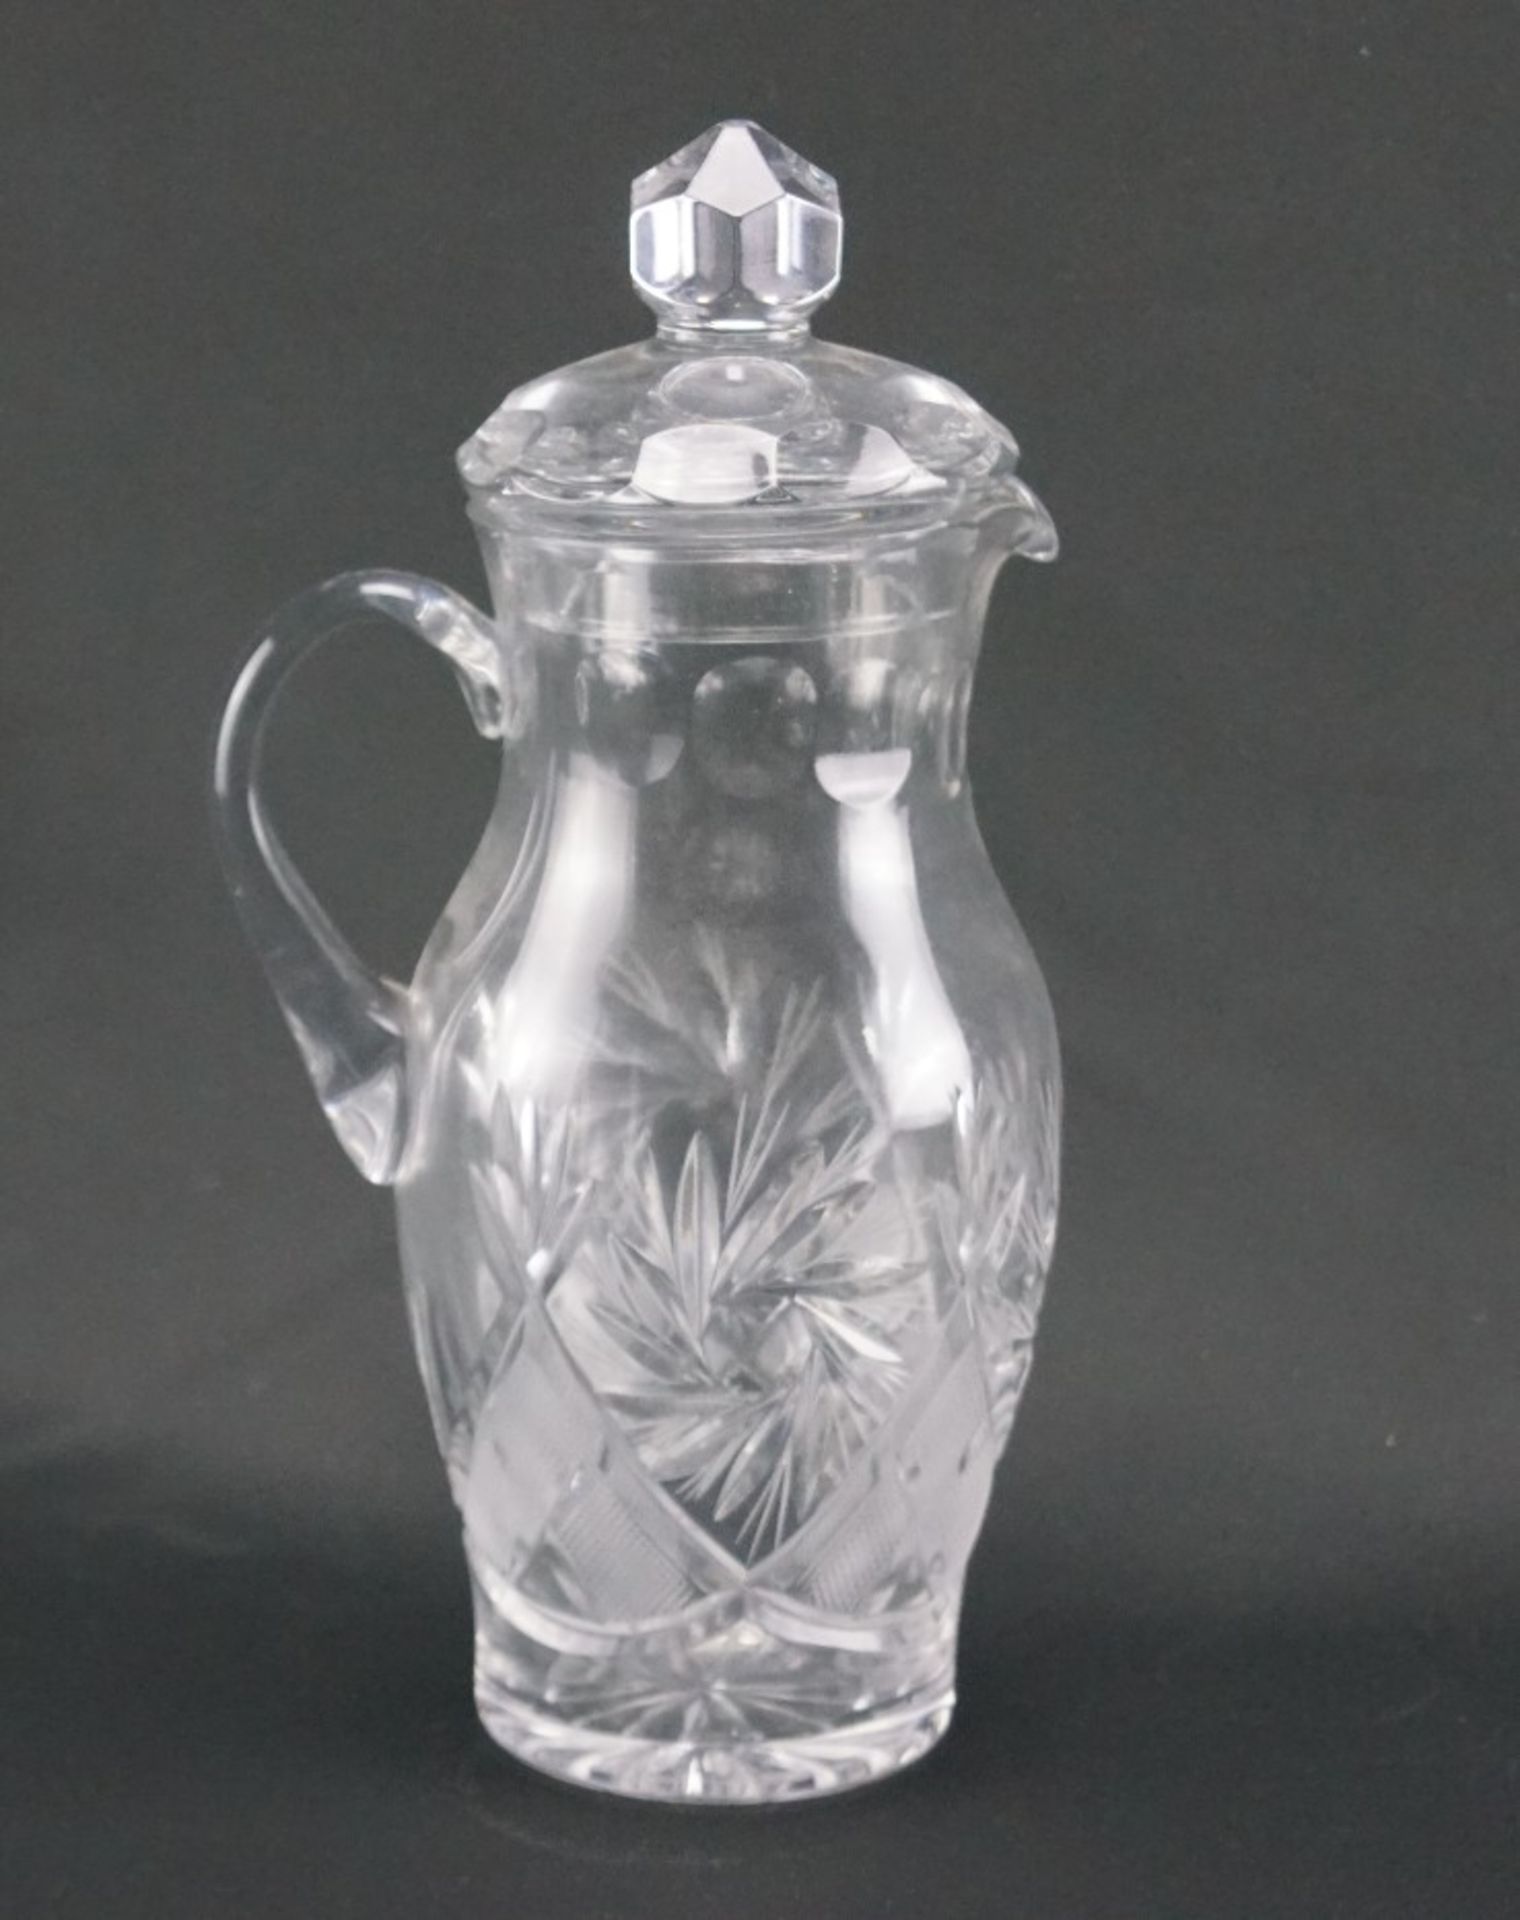 Glaskaraffe aus KristallglasKristallglas, Höhe der Karaffe 27 cm und Durchmesser 9 cm, in einem sehr